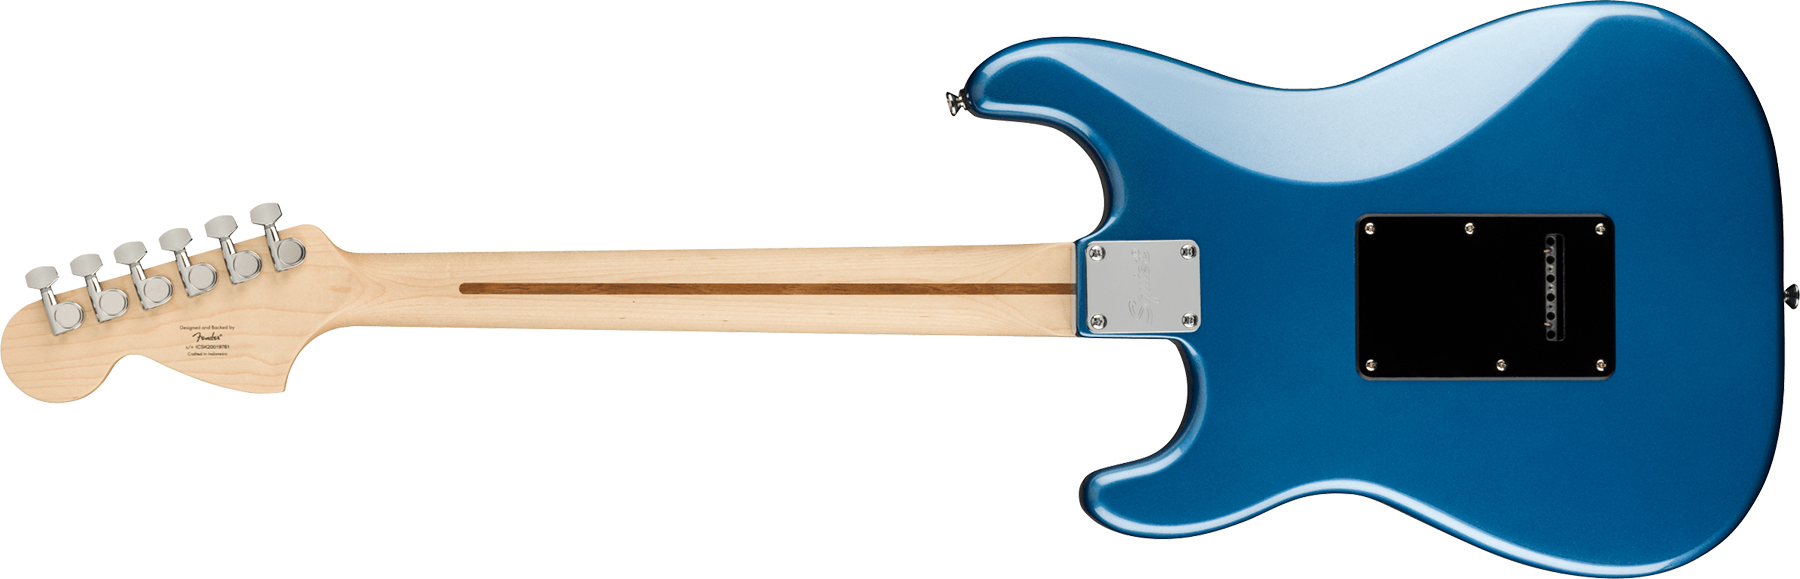 Squier Strat Affinity 2021 Sss Trem Mn - Lake Placid Blue - Guitarra eléctrica con forma de str. - Variation 1